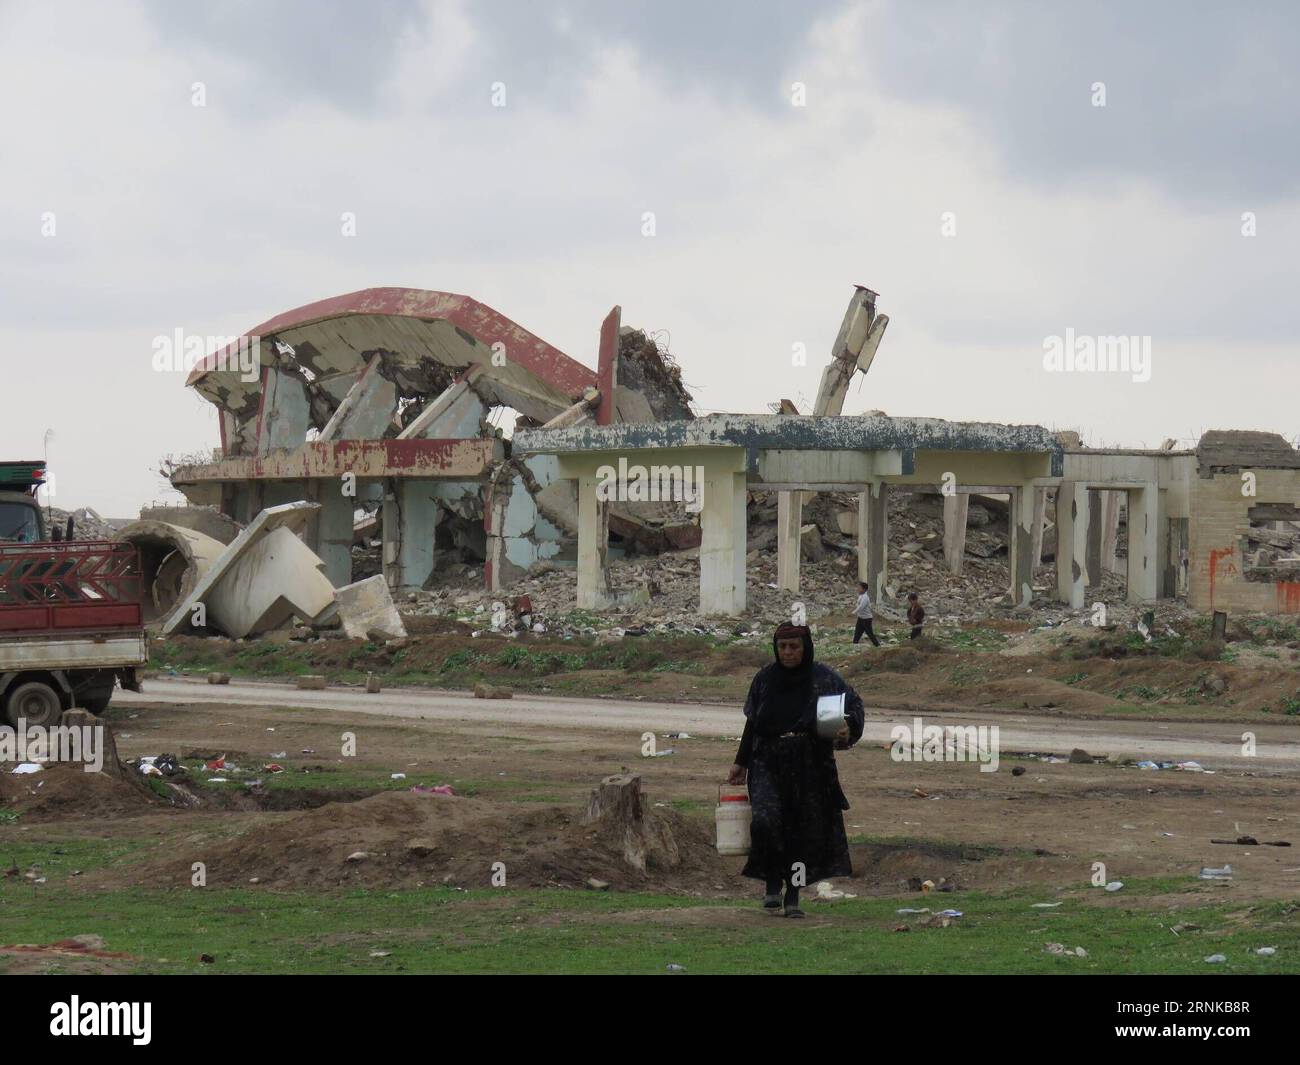 (170320) -- MOSSOUL, le 19 mars 2017 -- Une femme passe devant les ruines d'un bâtiment à l'extérieur du camp de hammam Aleel, en Irak, le 19 mars 2017. À environ 20 km au sud de Mossoul, le camp de hammam Aleel est une plaque tournante importante pour les civils de Mossoul qui doivent être déplacés. Selon un responsable du camp, plus de 35 000 personnes vivaient ici au plus fort, et environ 10 000 personnes sont relocalisées ici à l'heure actuelle.) (dtf) IRAK-MOSSOUL-HAMMAM ALEEL CAMP-RÉFUGIÉS KhalilxDawood PUBLICATIONxNOTxINxCHN Mossoul Mars 19 2017 une femme passe devant les ruines d'un bâtiment à l'extérieur du camp de hammam Irak LE 19 2017 mars À environ 20 km au sud Banque D'Images